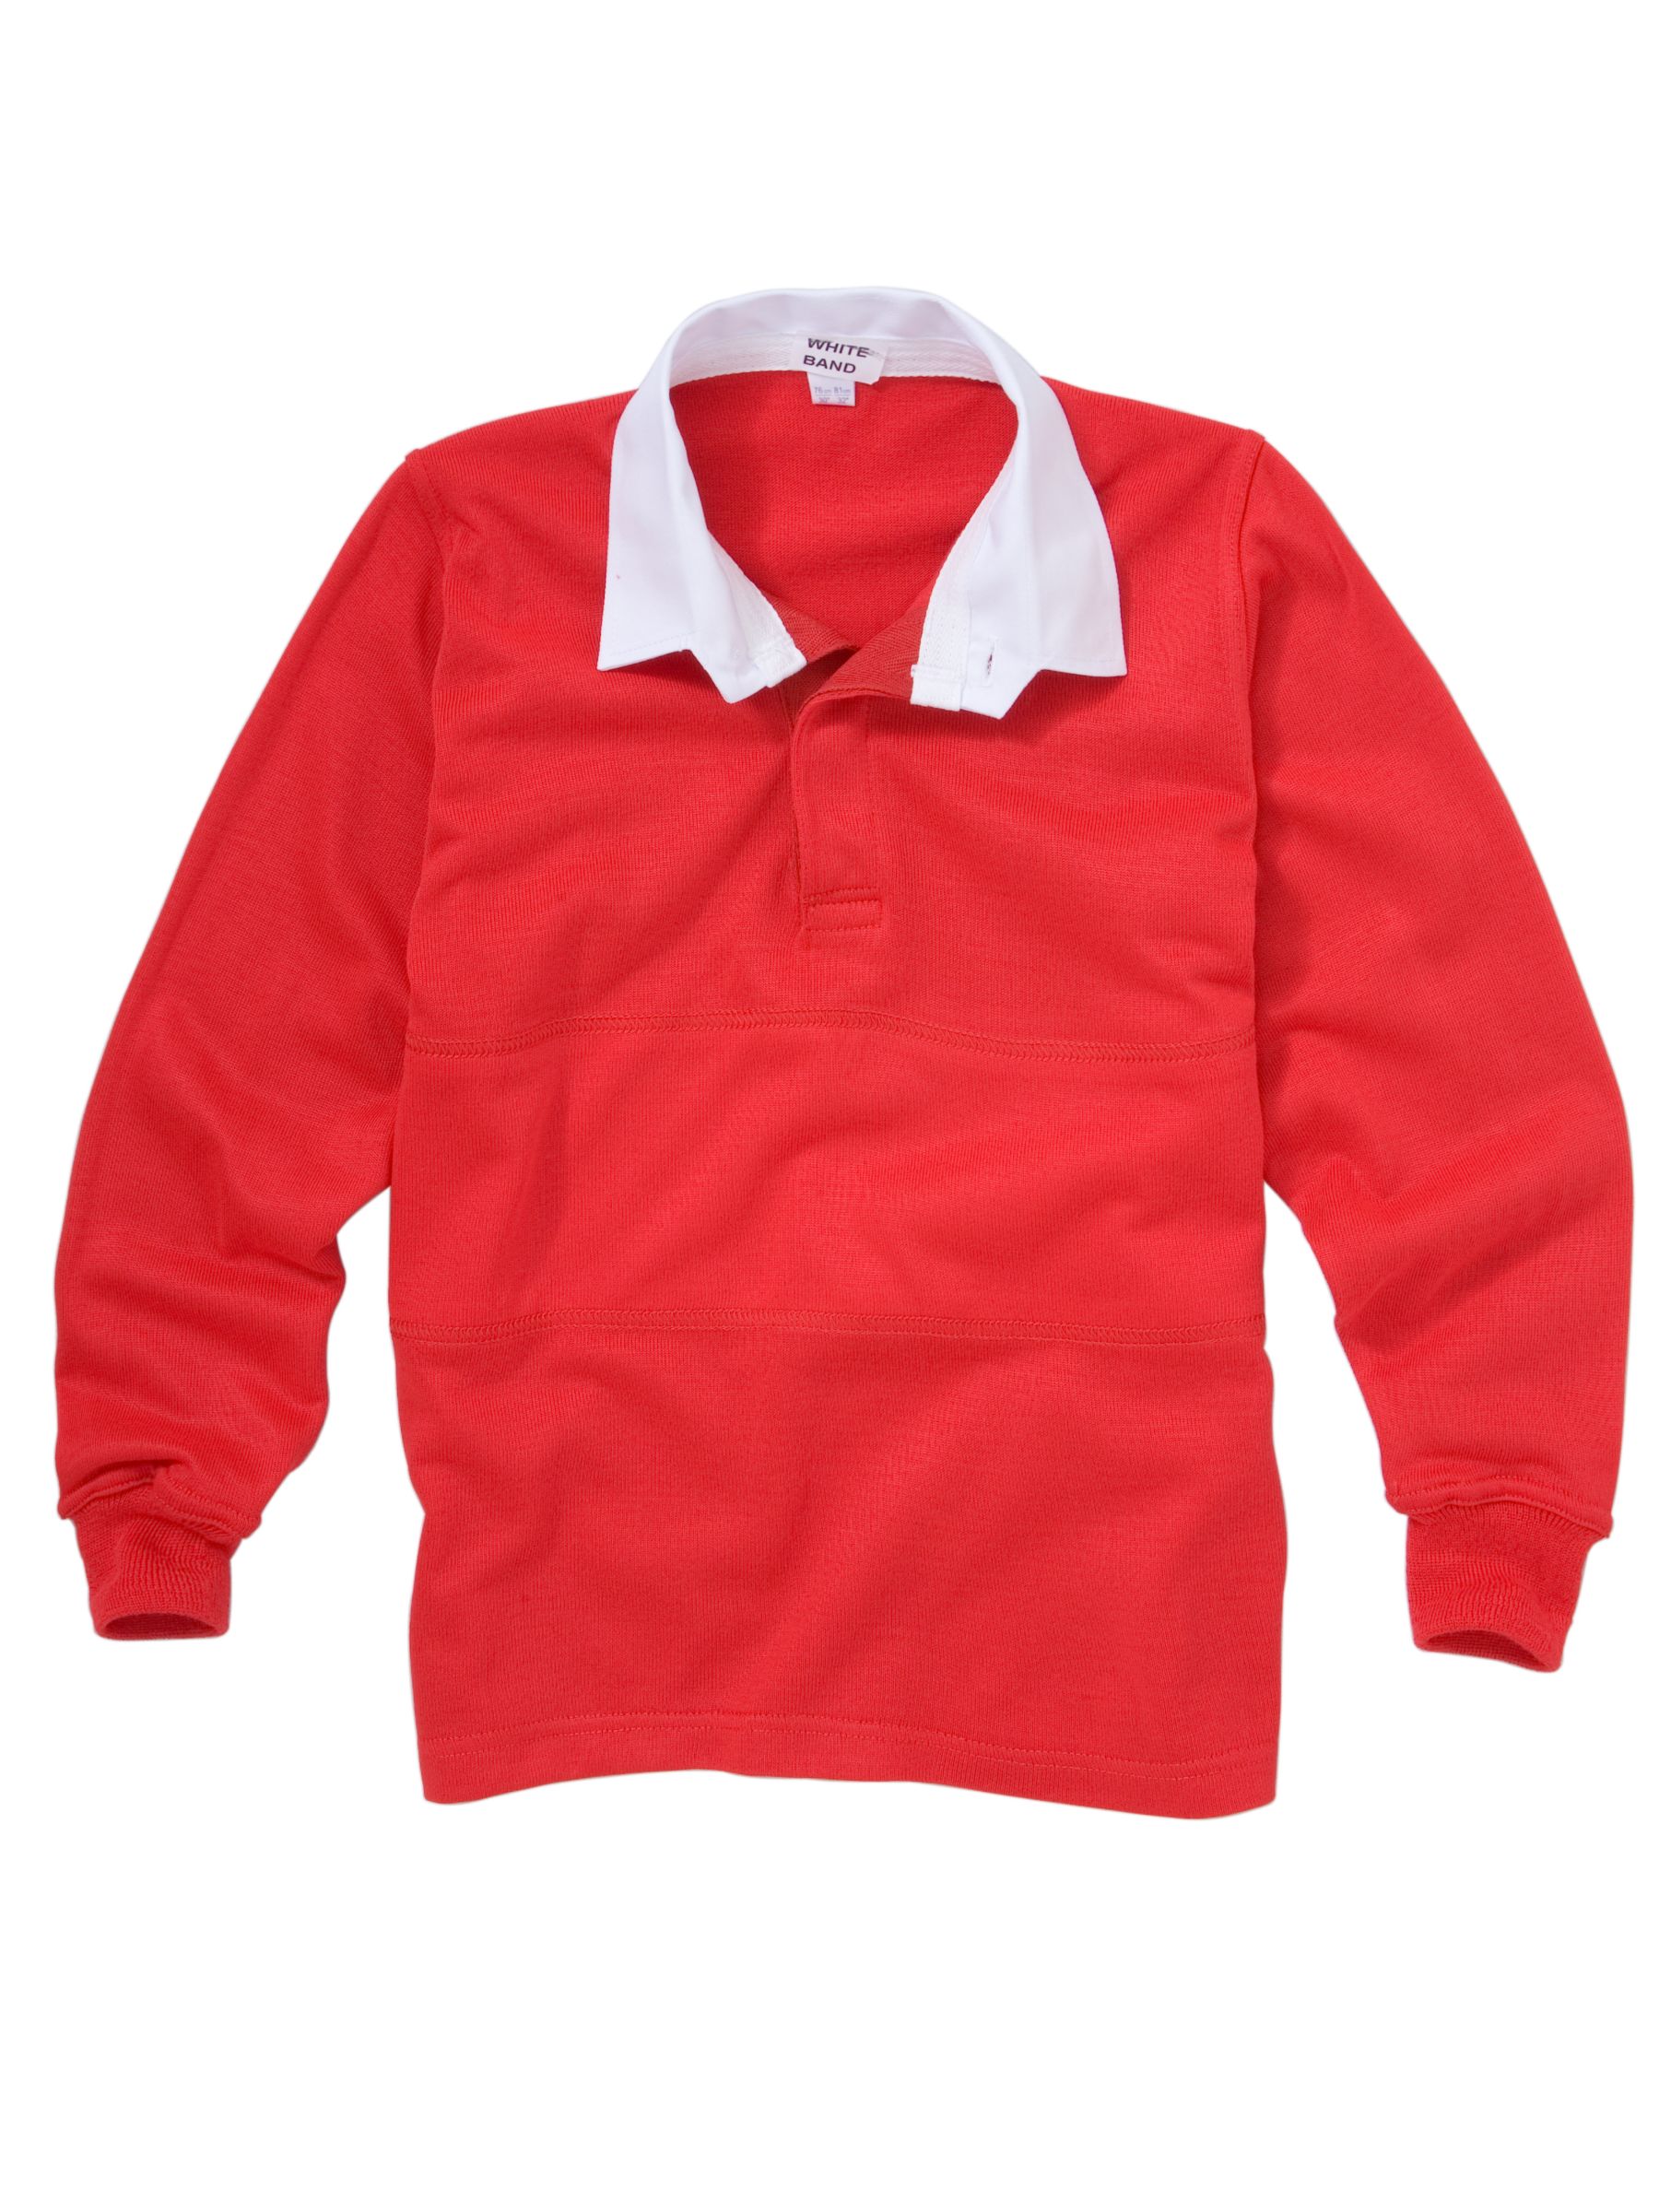 Sunninghill School School Boys Rugby Shirt, Red